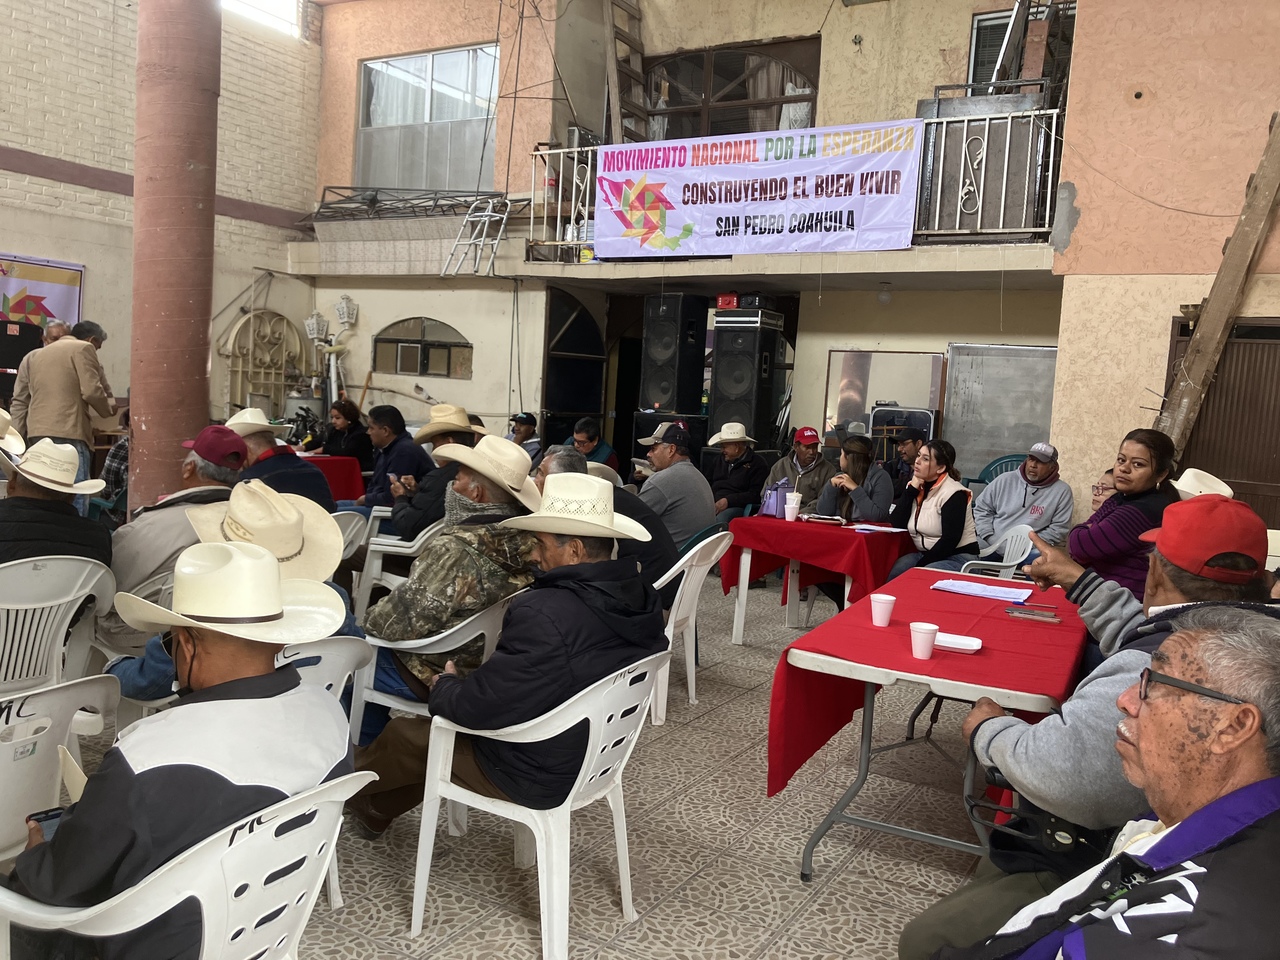 La reunión tuvo lugar la mañana de ayer miércoles en un domicilio localizado en la colonia Benito Juárez de San Pedro.